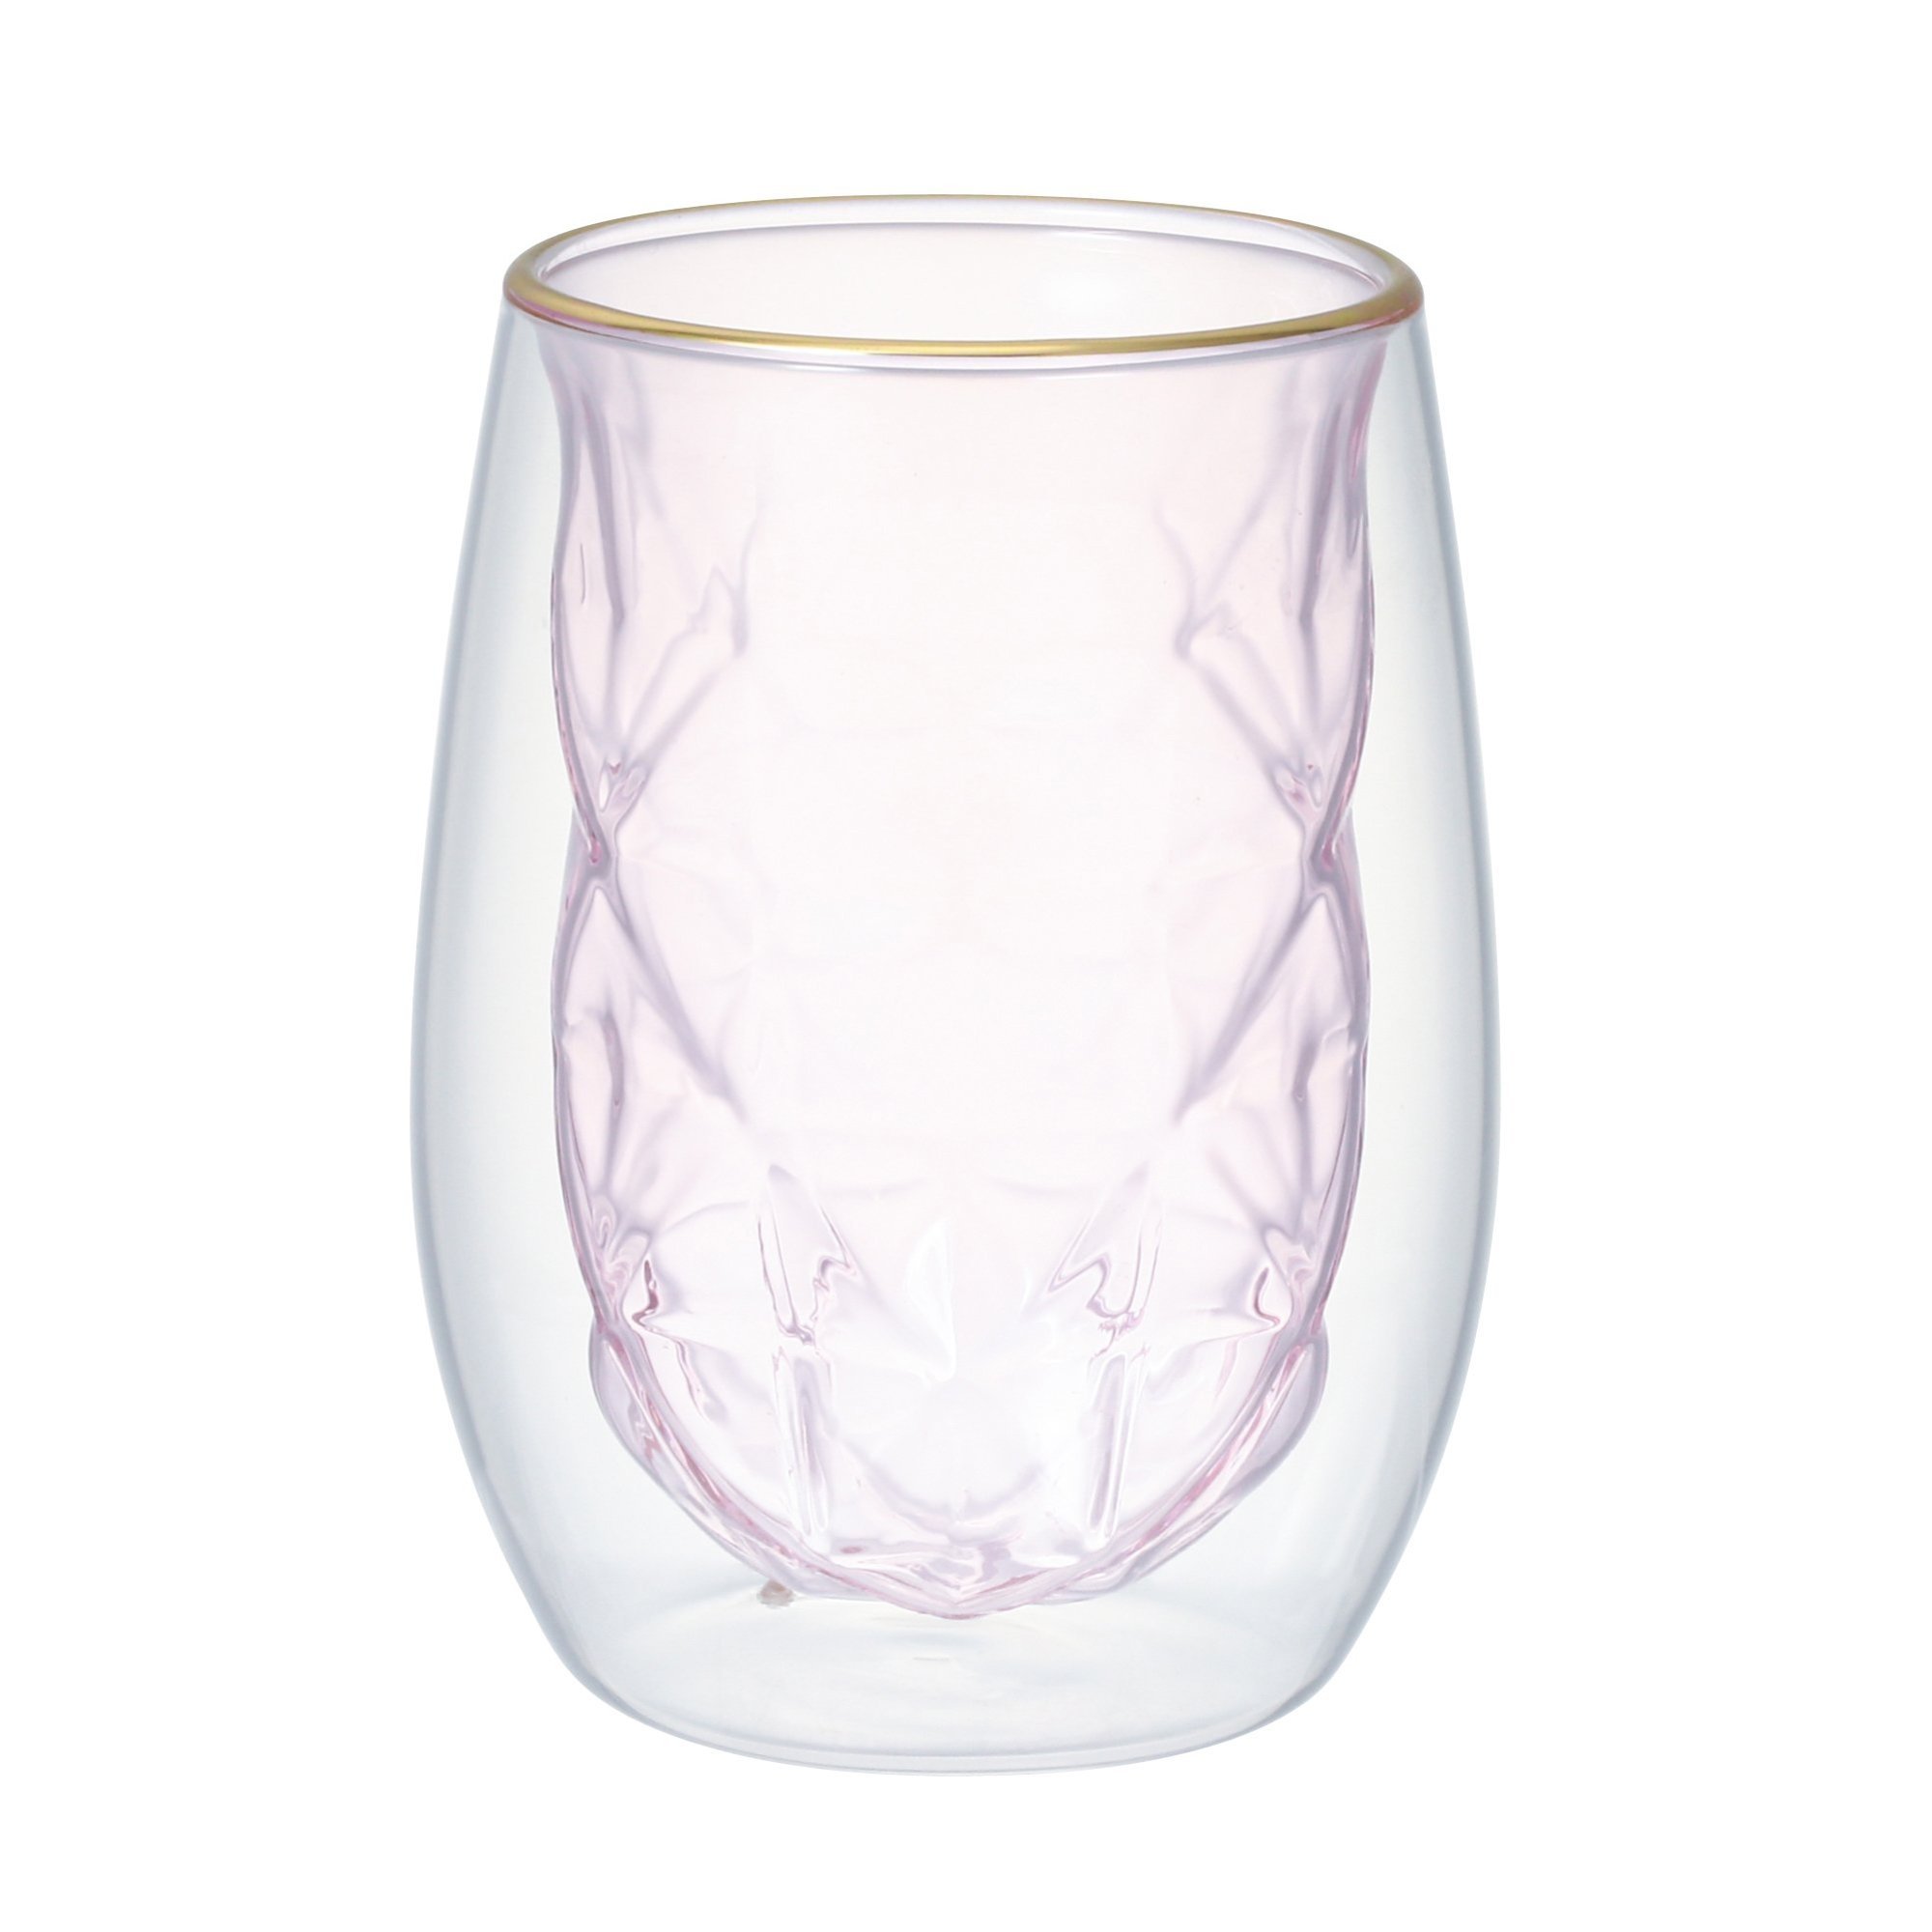 Francfranc ダイヤ ダブルウォールグラス フランフラン 食器 調理器具 キッチン用品 グラス マグカップ タンブラー ピンク